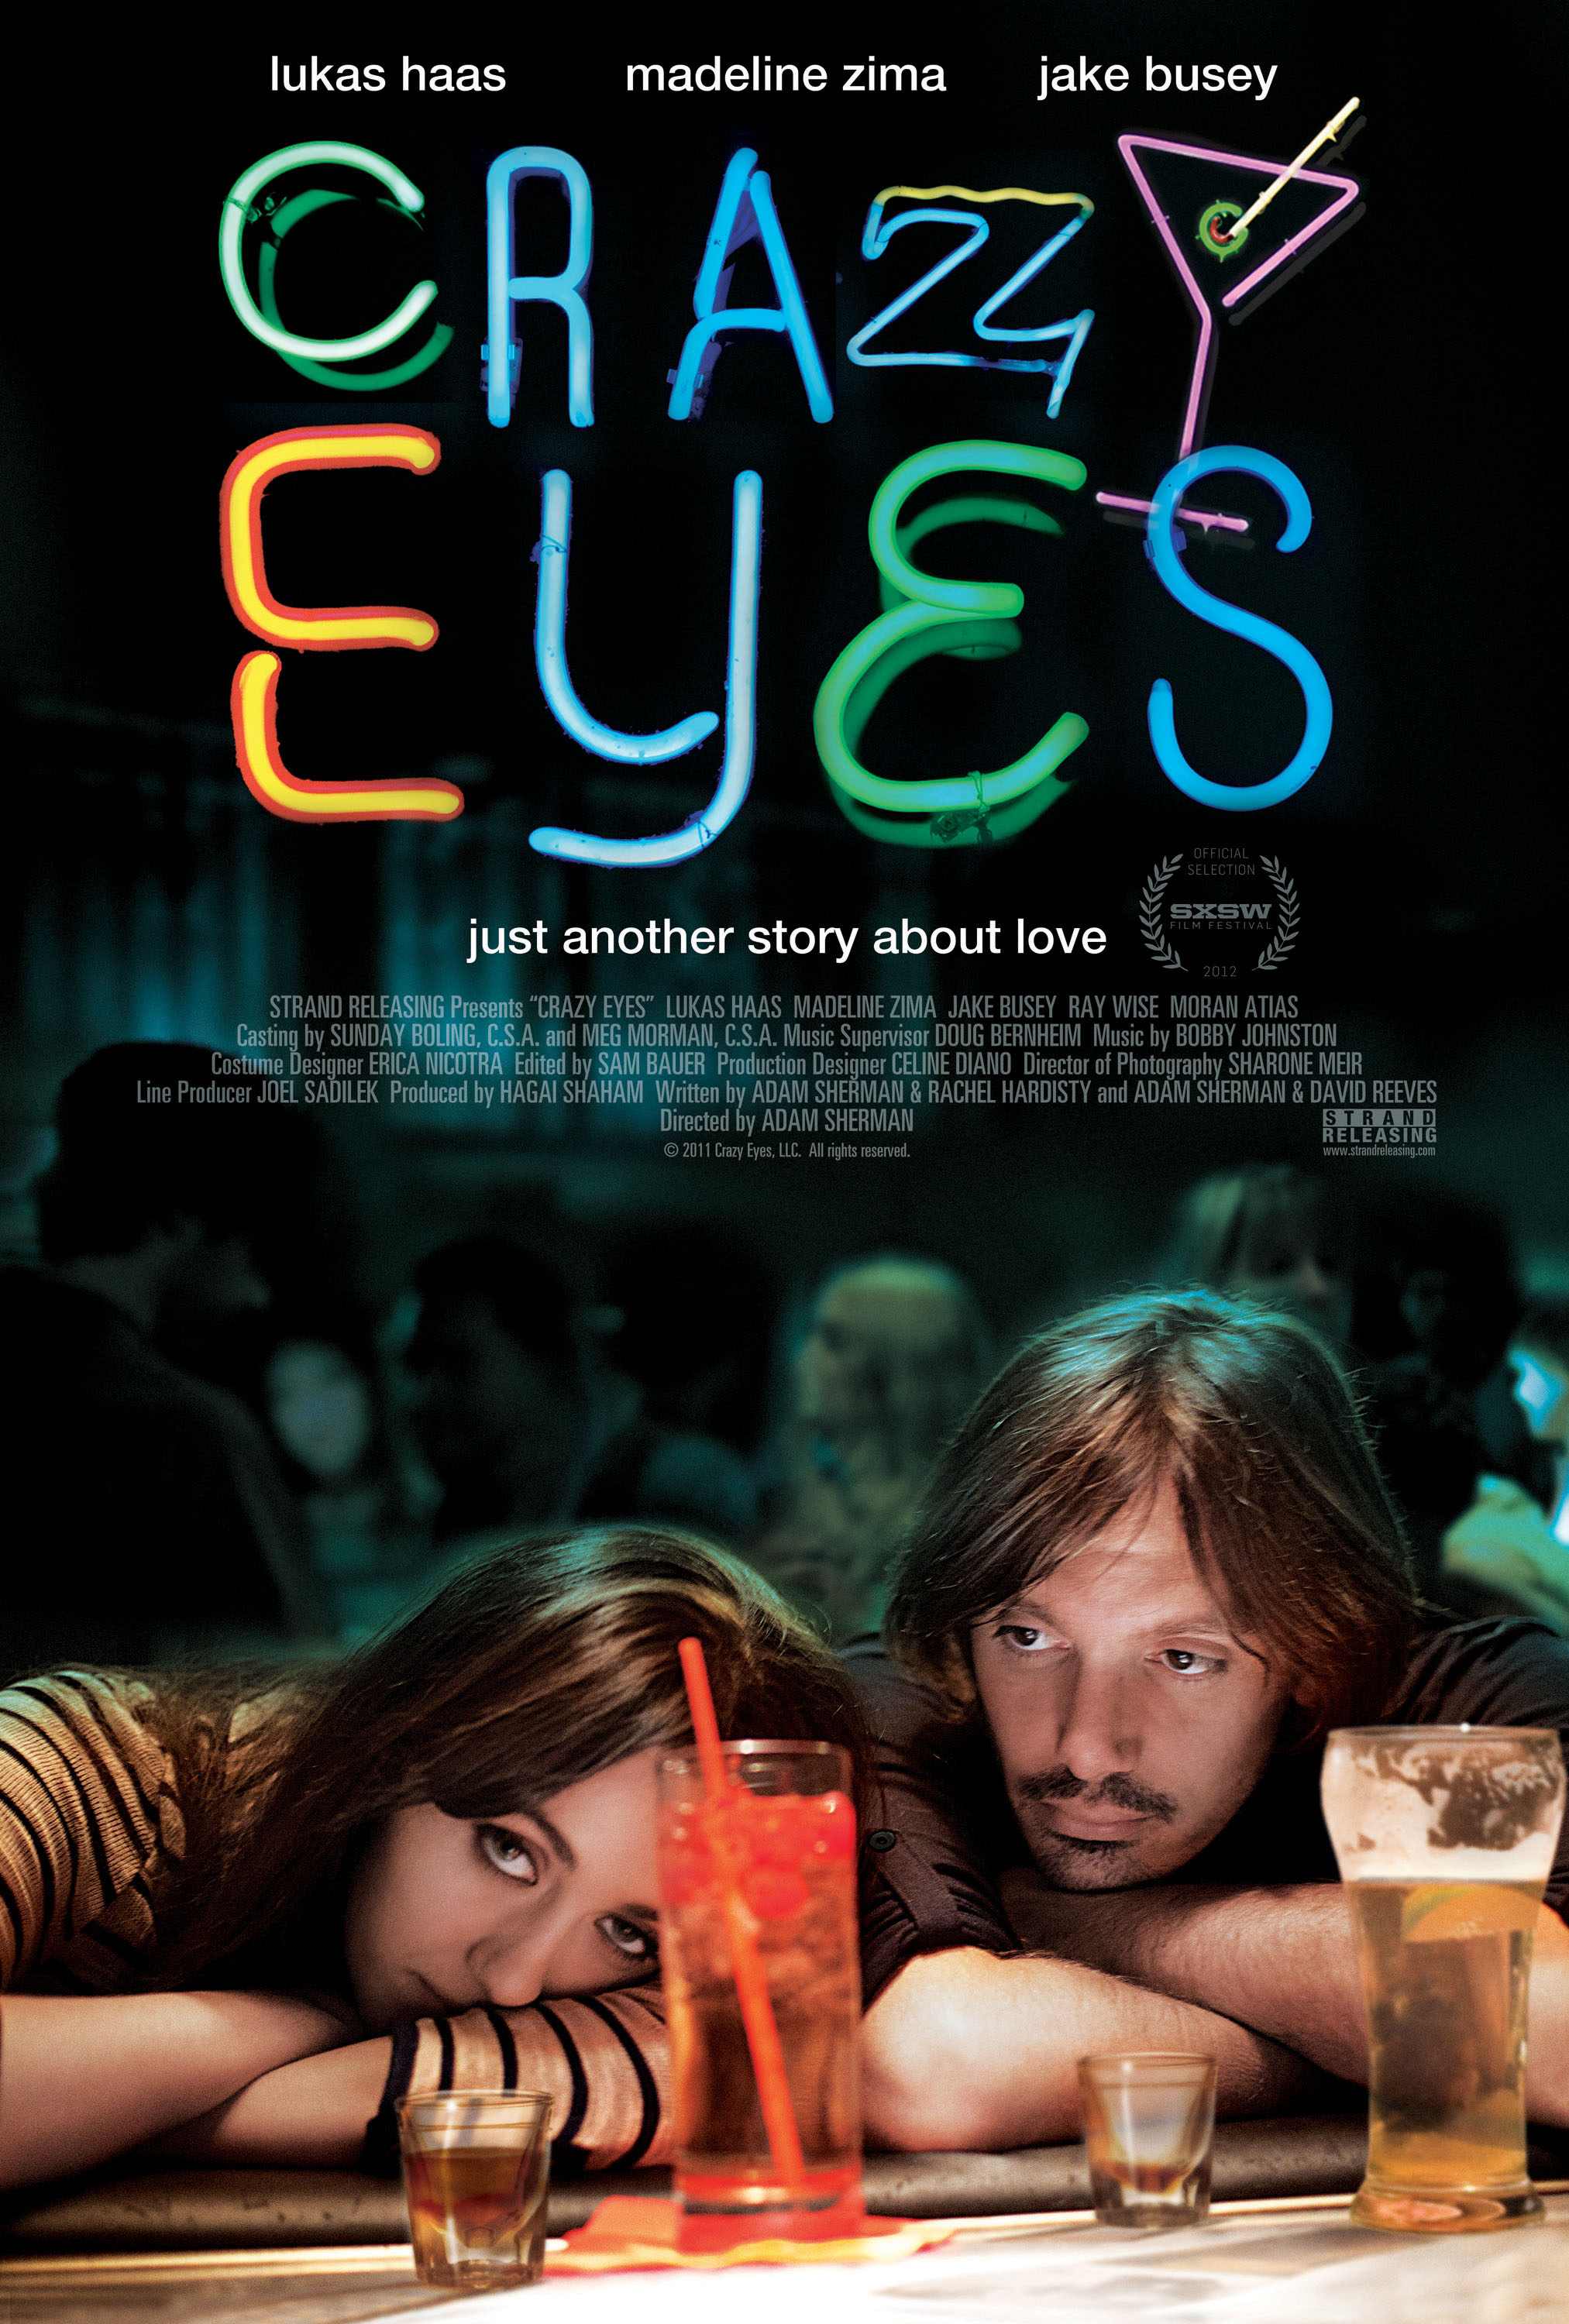 Lukas Haas in Crazy Eyes